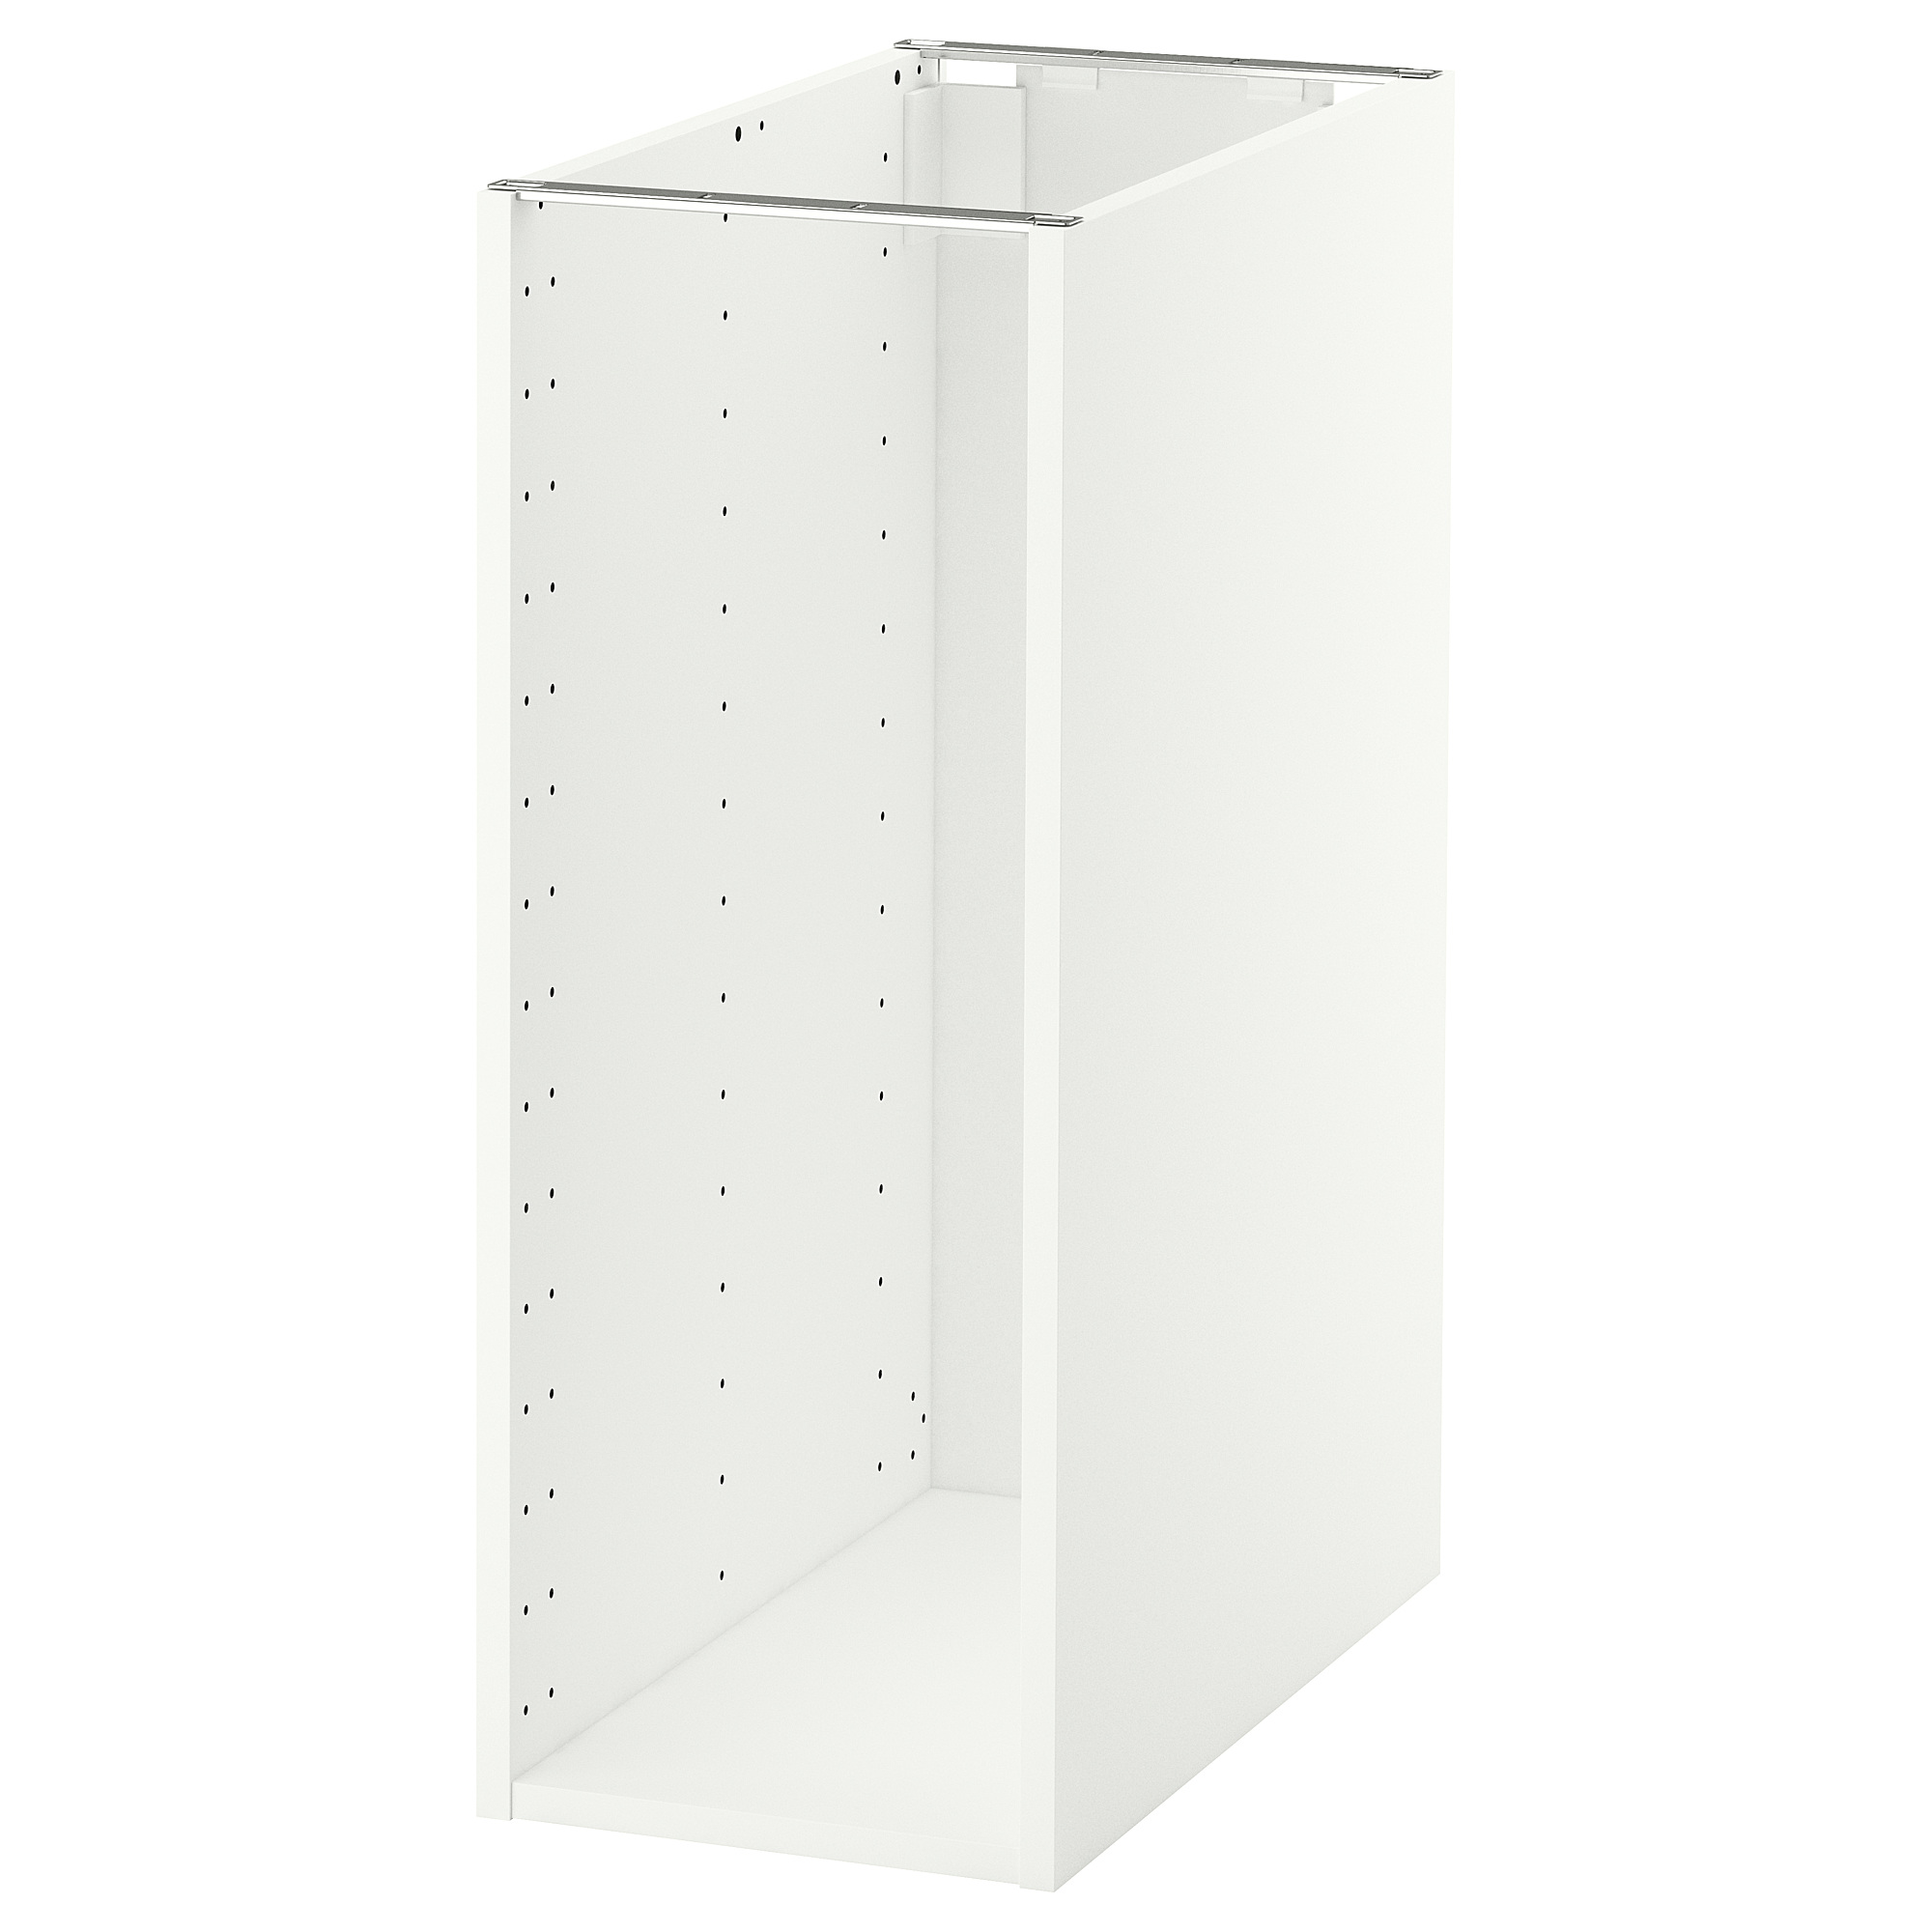 METOD base cabinet frame